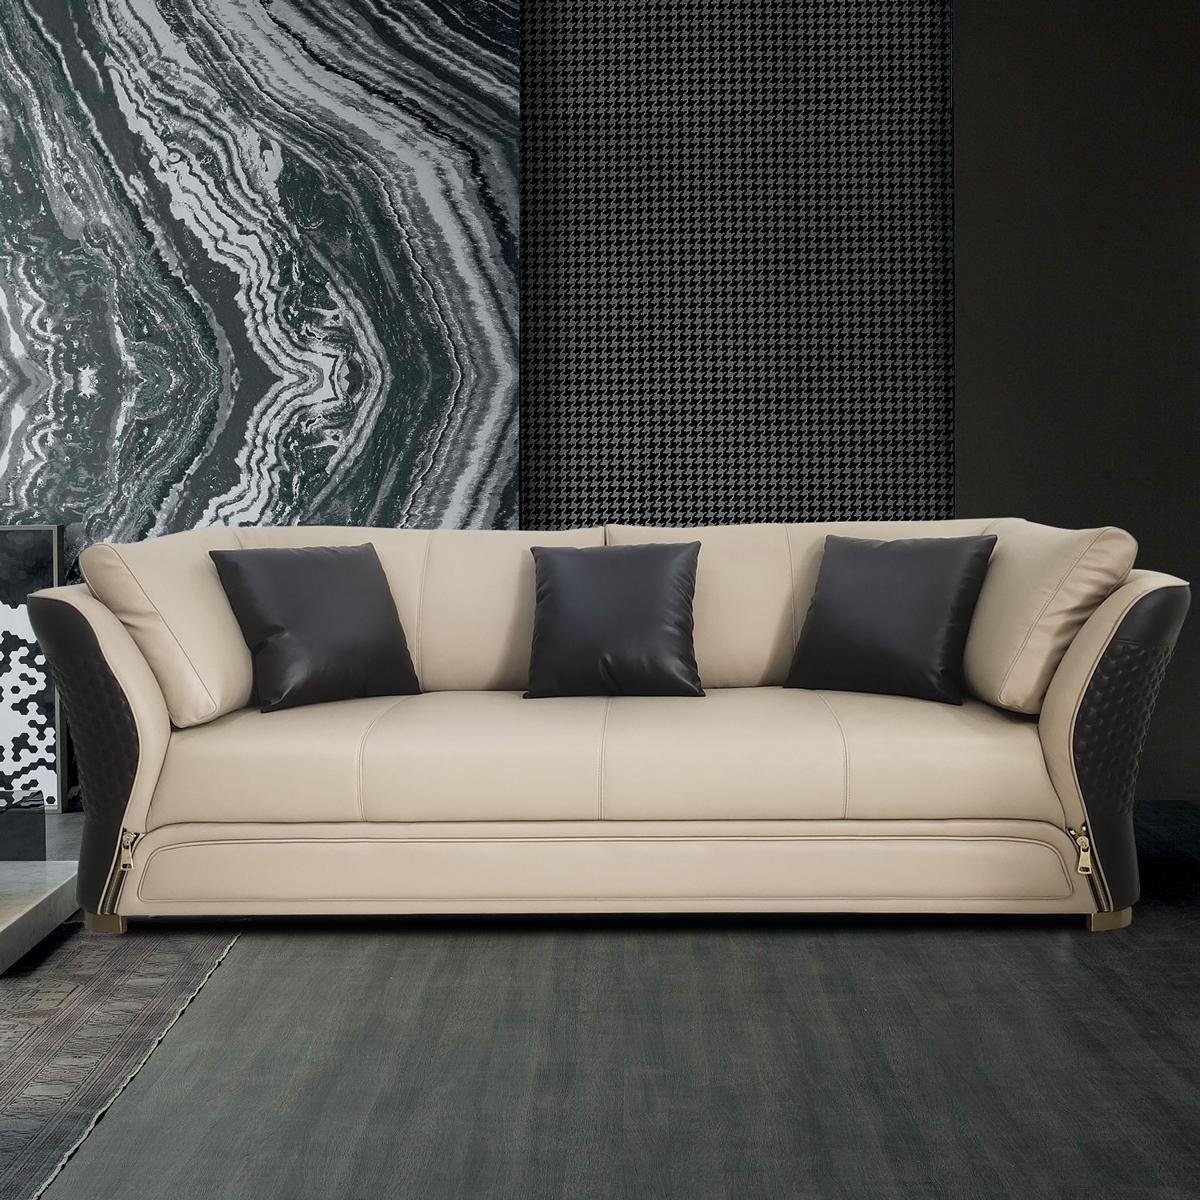 JVmoebel Wohnzimmer-Set, Sofagarnitur 3 1 Sitzer Set Design Sofa Polster Couchen Couch Modern Weiß/Schwarz